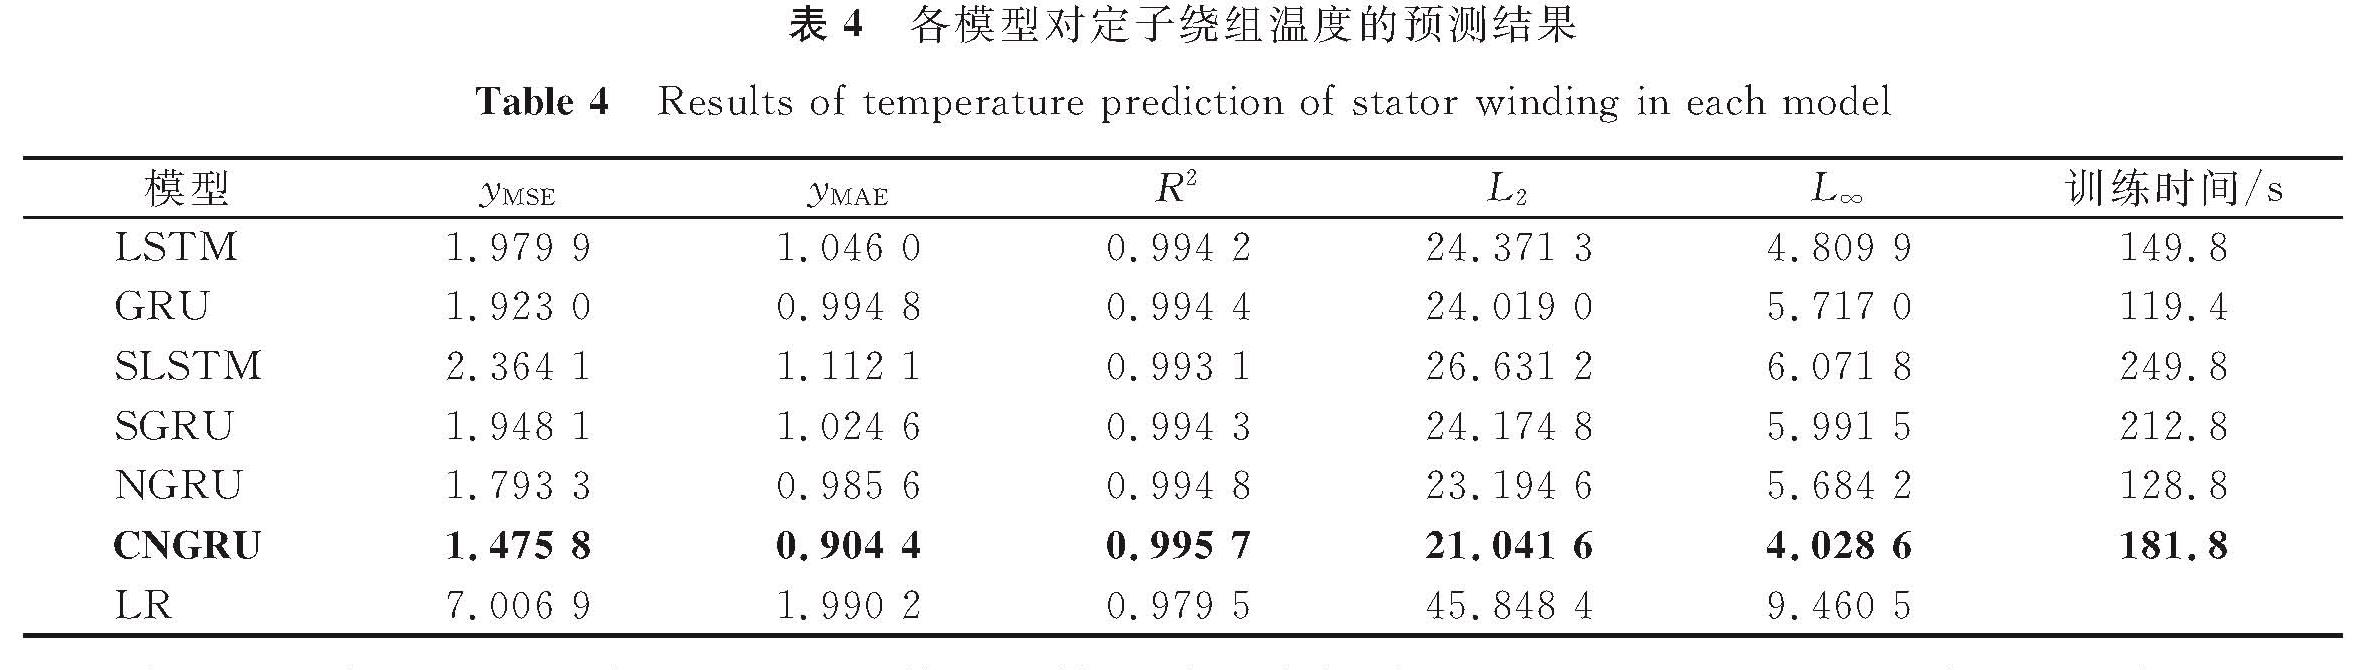 表4 各模型对定子绕组温度的预测结果<br/>Table 4 Results of temperature prediction of stator winding in each model